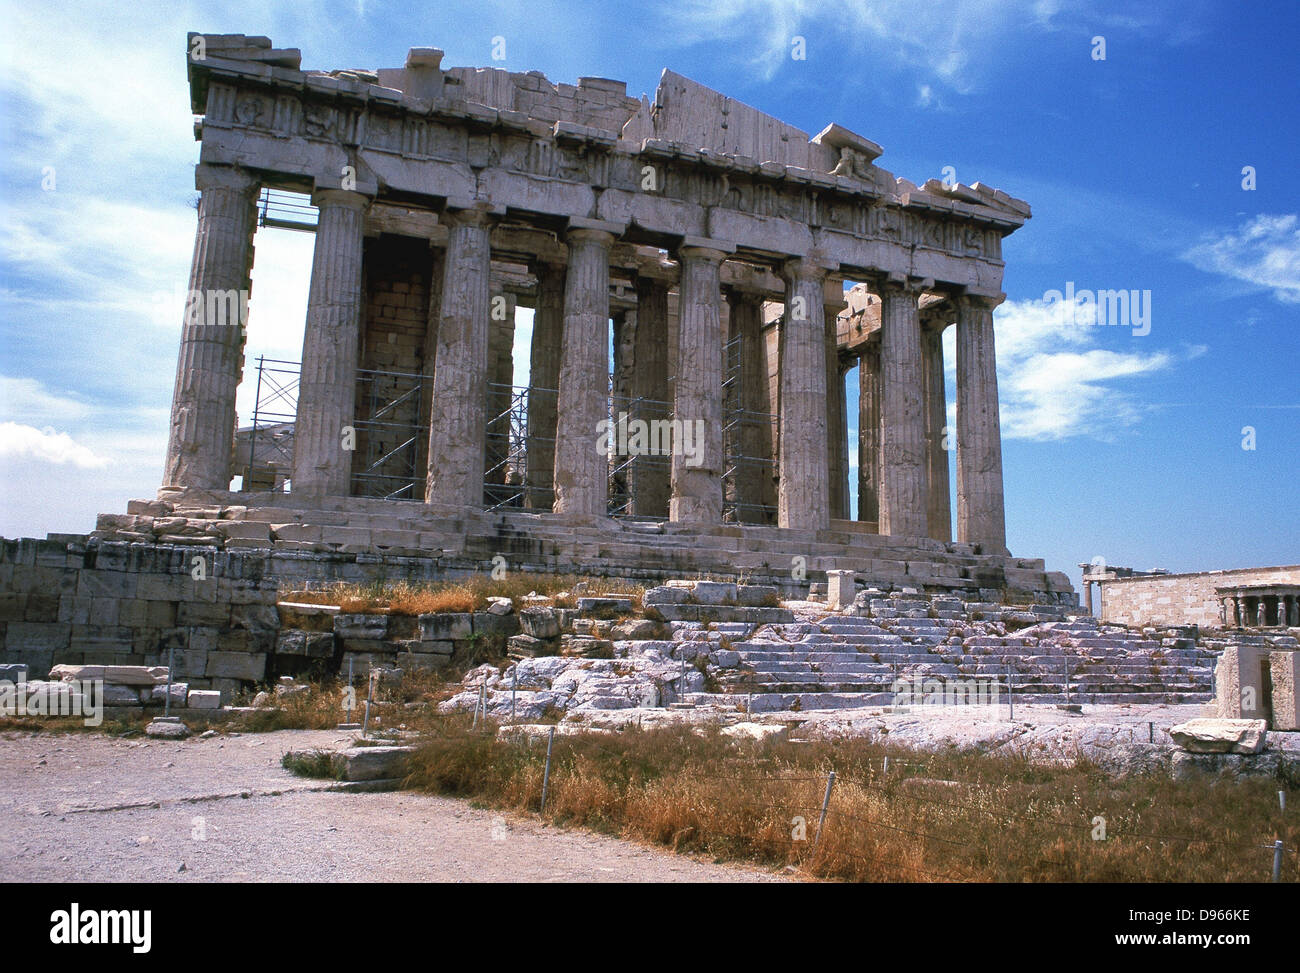 Le Parthénon sur l'Acropole, Athènes. Le grand temple d'Athena, le dieu patron d'Athènes, commencé c445 BC, qui abritait l'perdu colossale statue de la déesse par Phidias. Banque D'Images